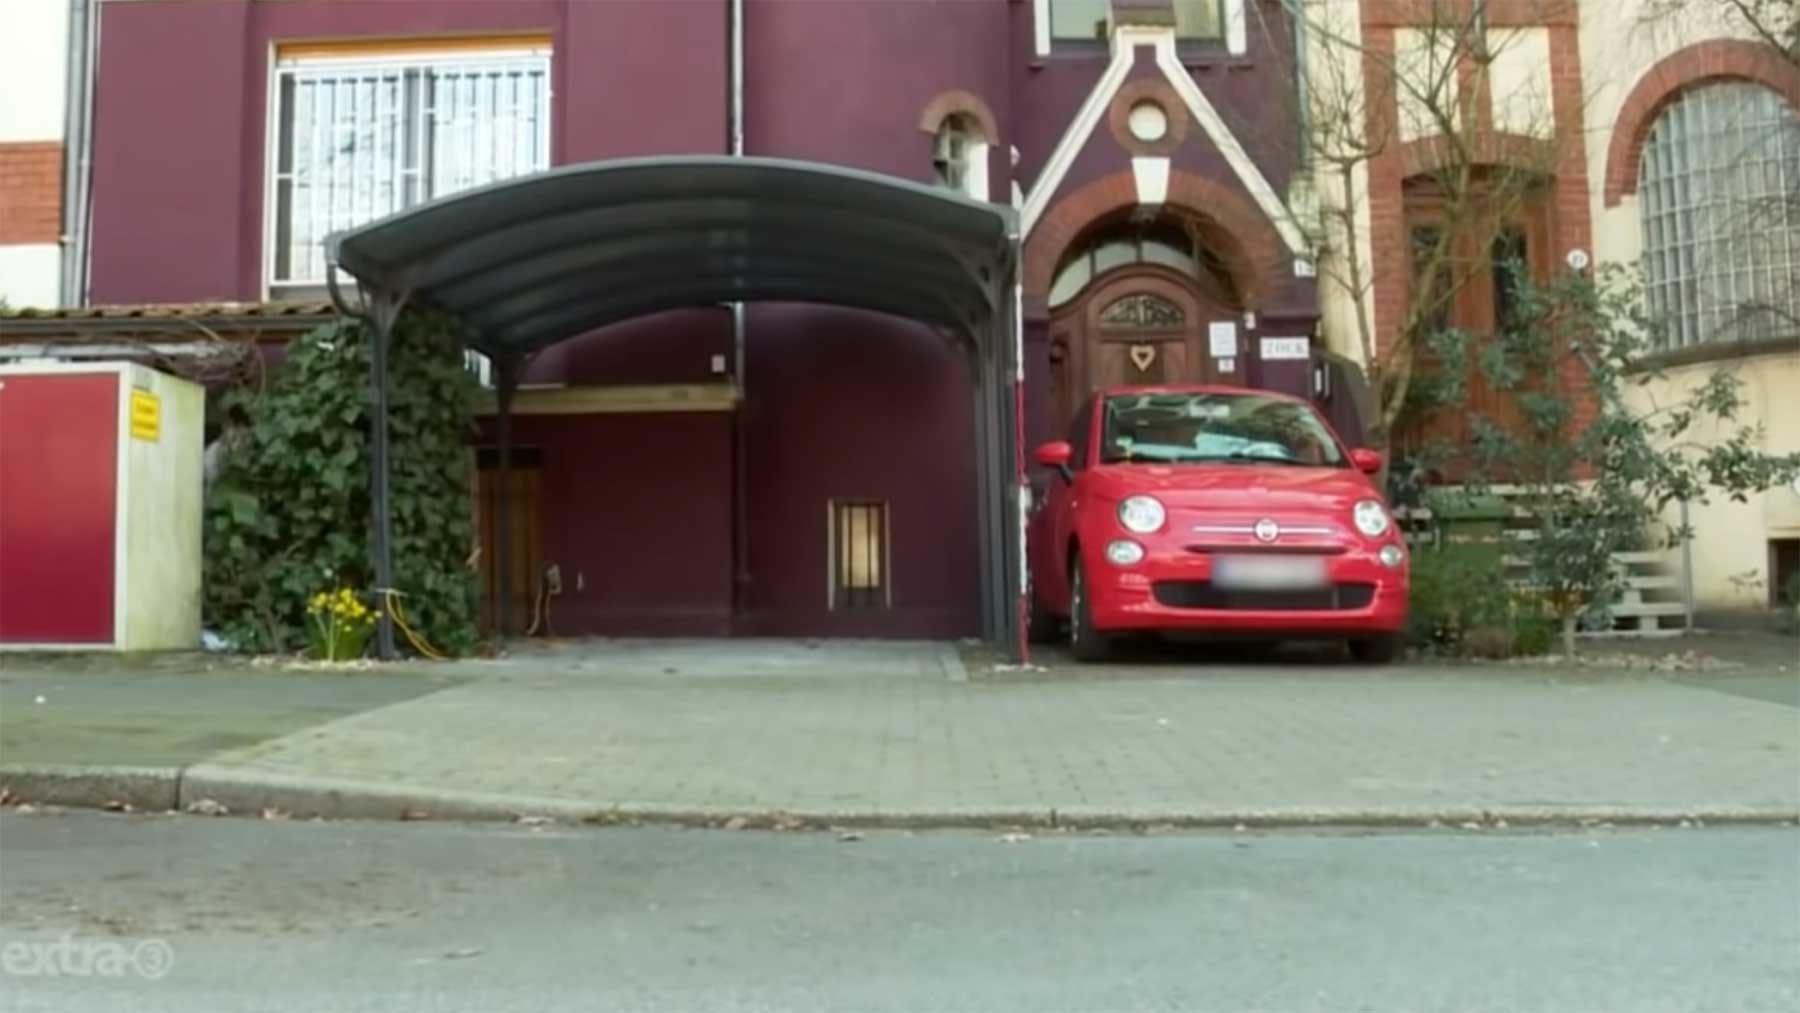 Realer Irrsinn: Kein Auto darf unter diesem Carport parken